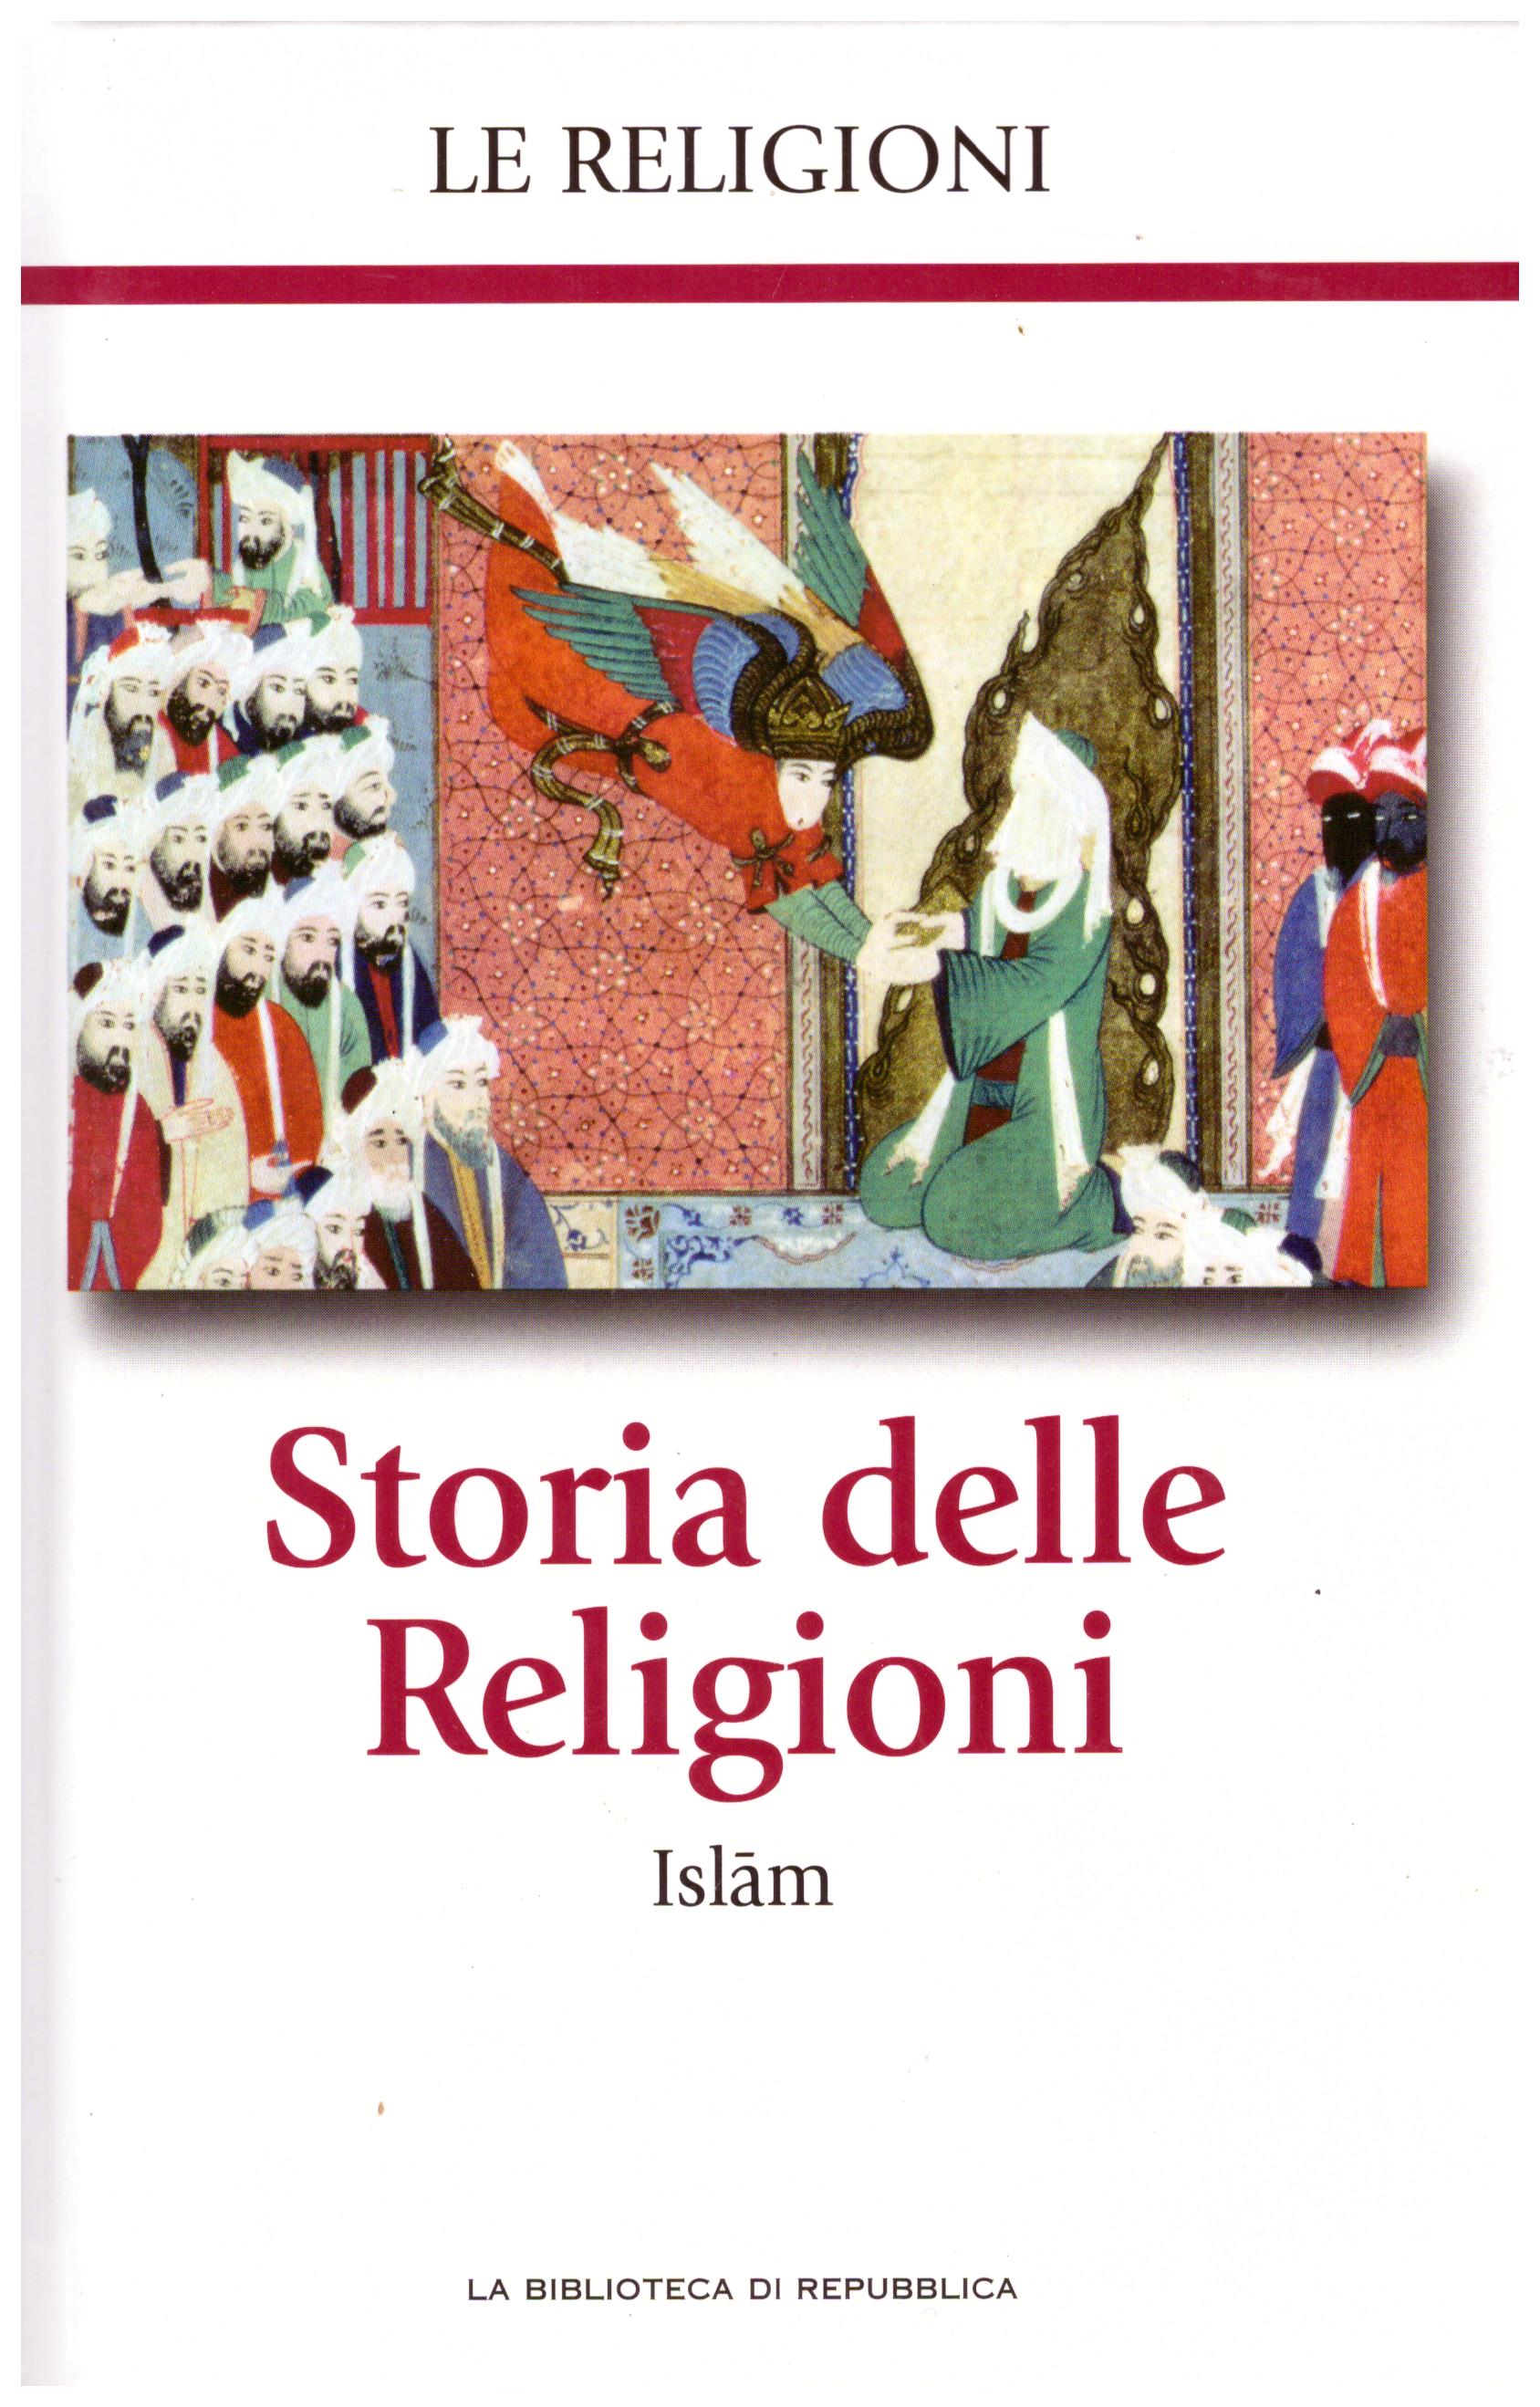 Titolo: Le religioni, Storia delle religioni, Islam N.6      Autore: AA.VV, la biblioteca di Repubblica     Editore: Piemme